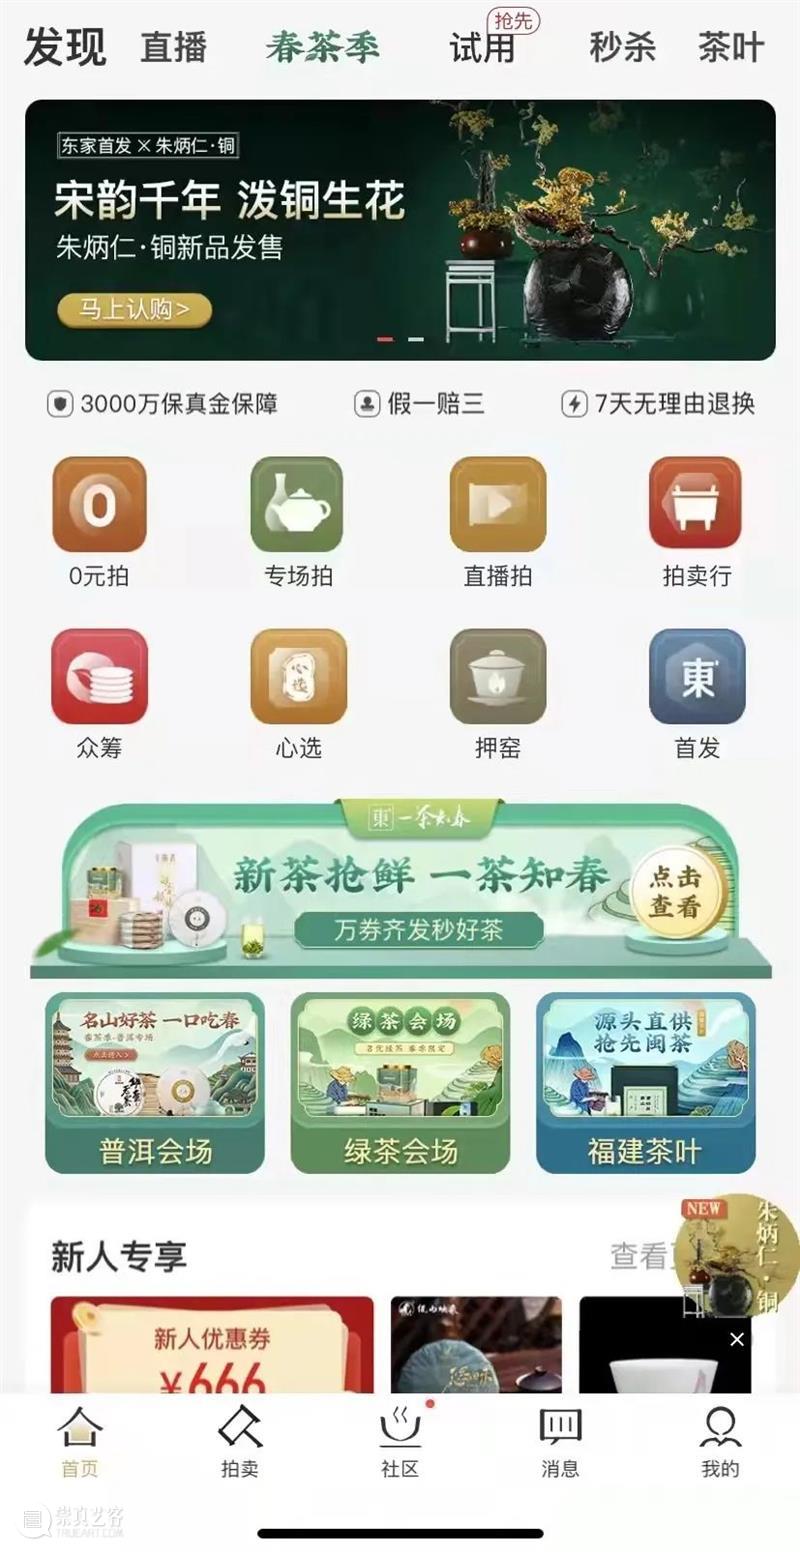 上海交通大学教你如何应用IP打造新消费新品牌！ 崇真艺客